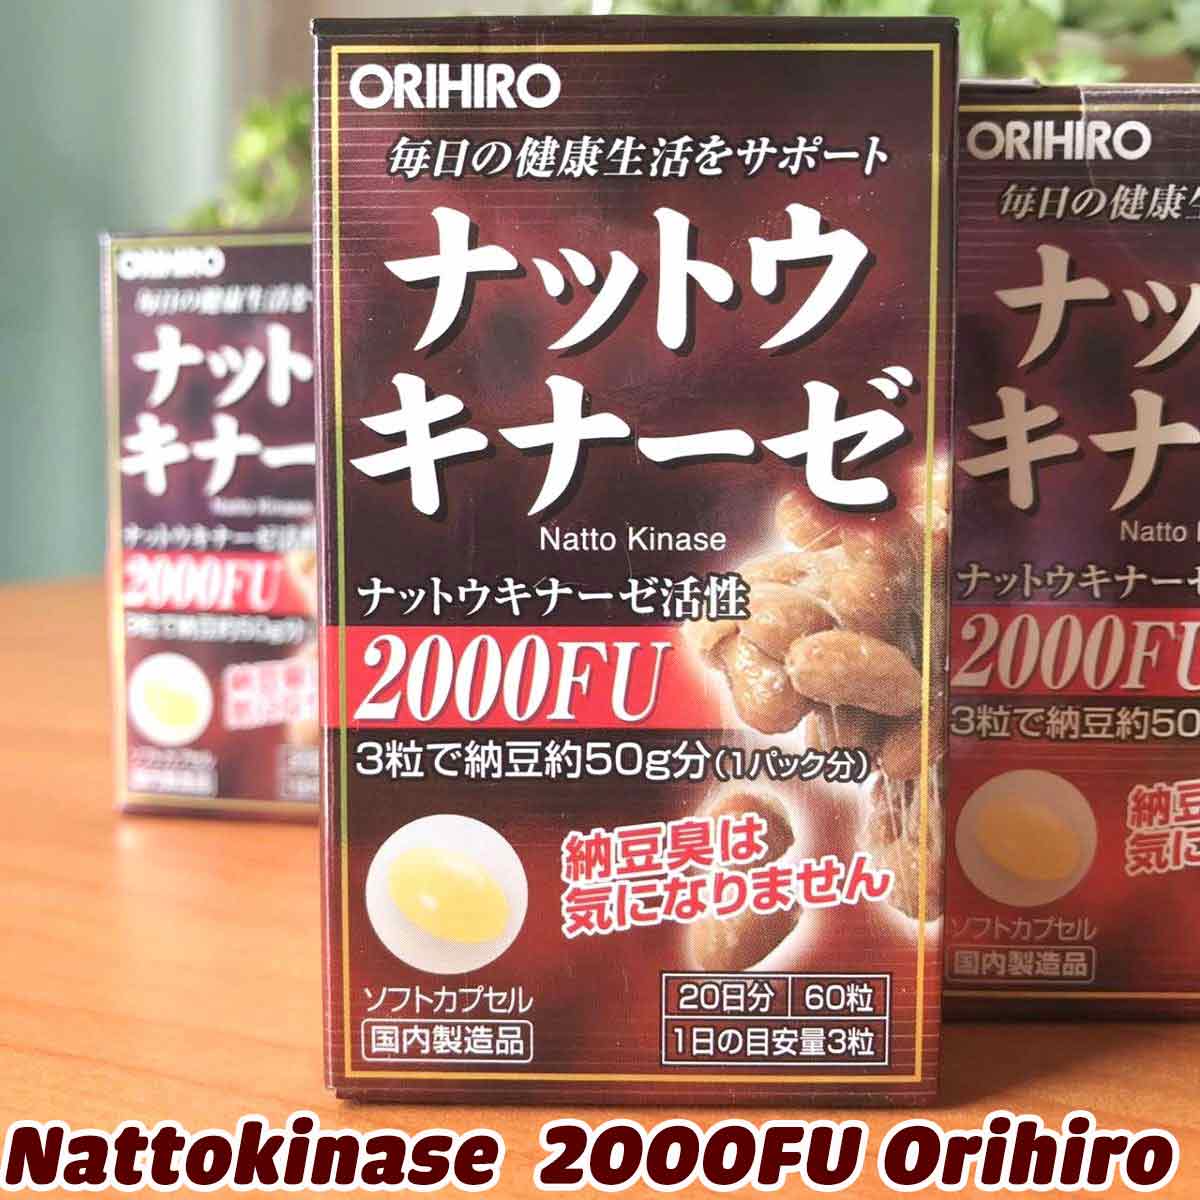 viên uống hỗ trợ chống đột quỵ nattokinase 2000fu orihiro có tốt không